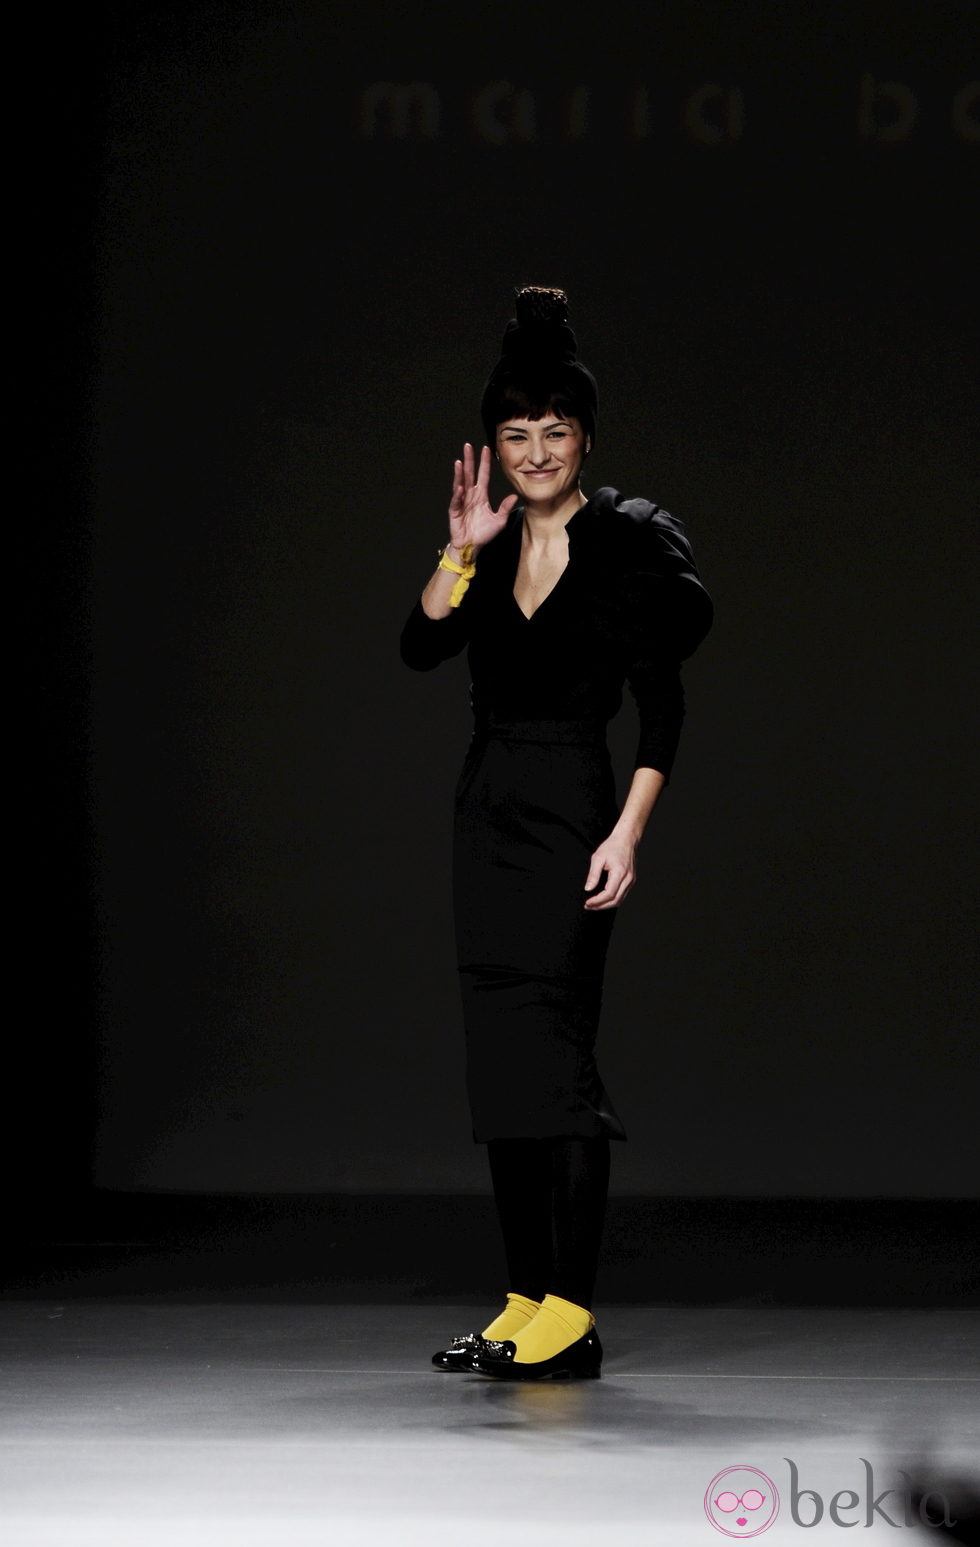 María Barros saluda tras su desfile en Madrid Fashion Week otoño/invierno 2013/2014